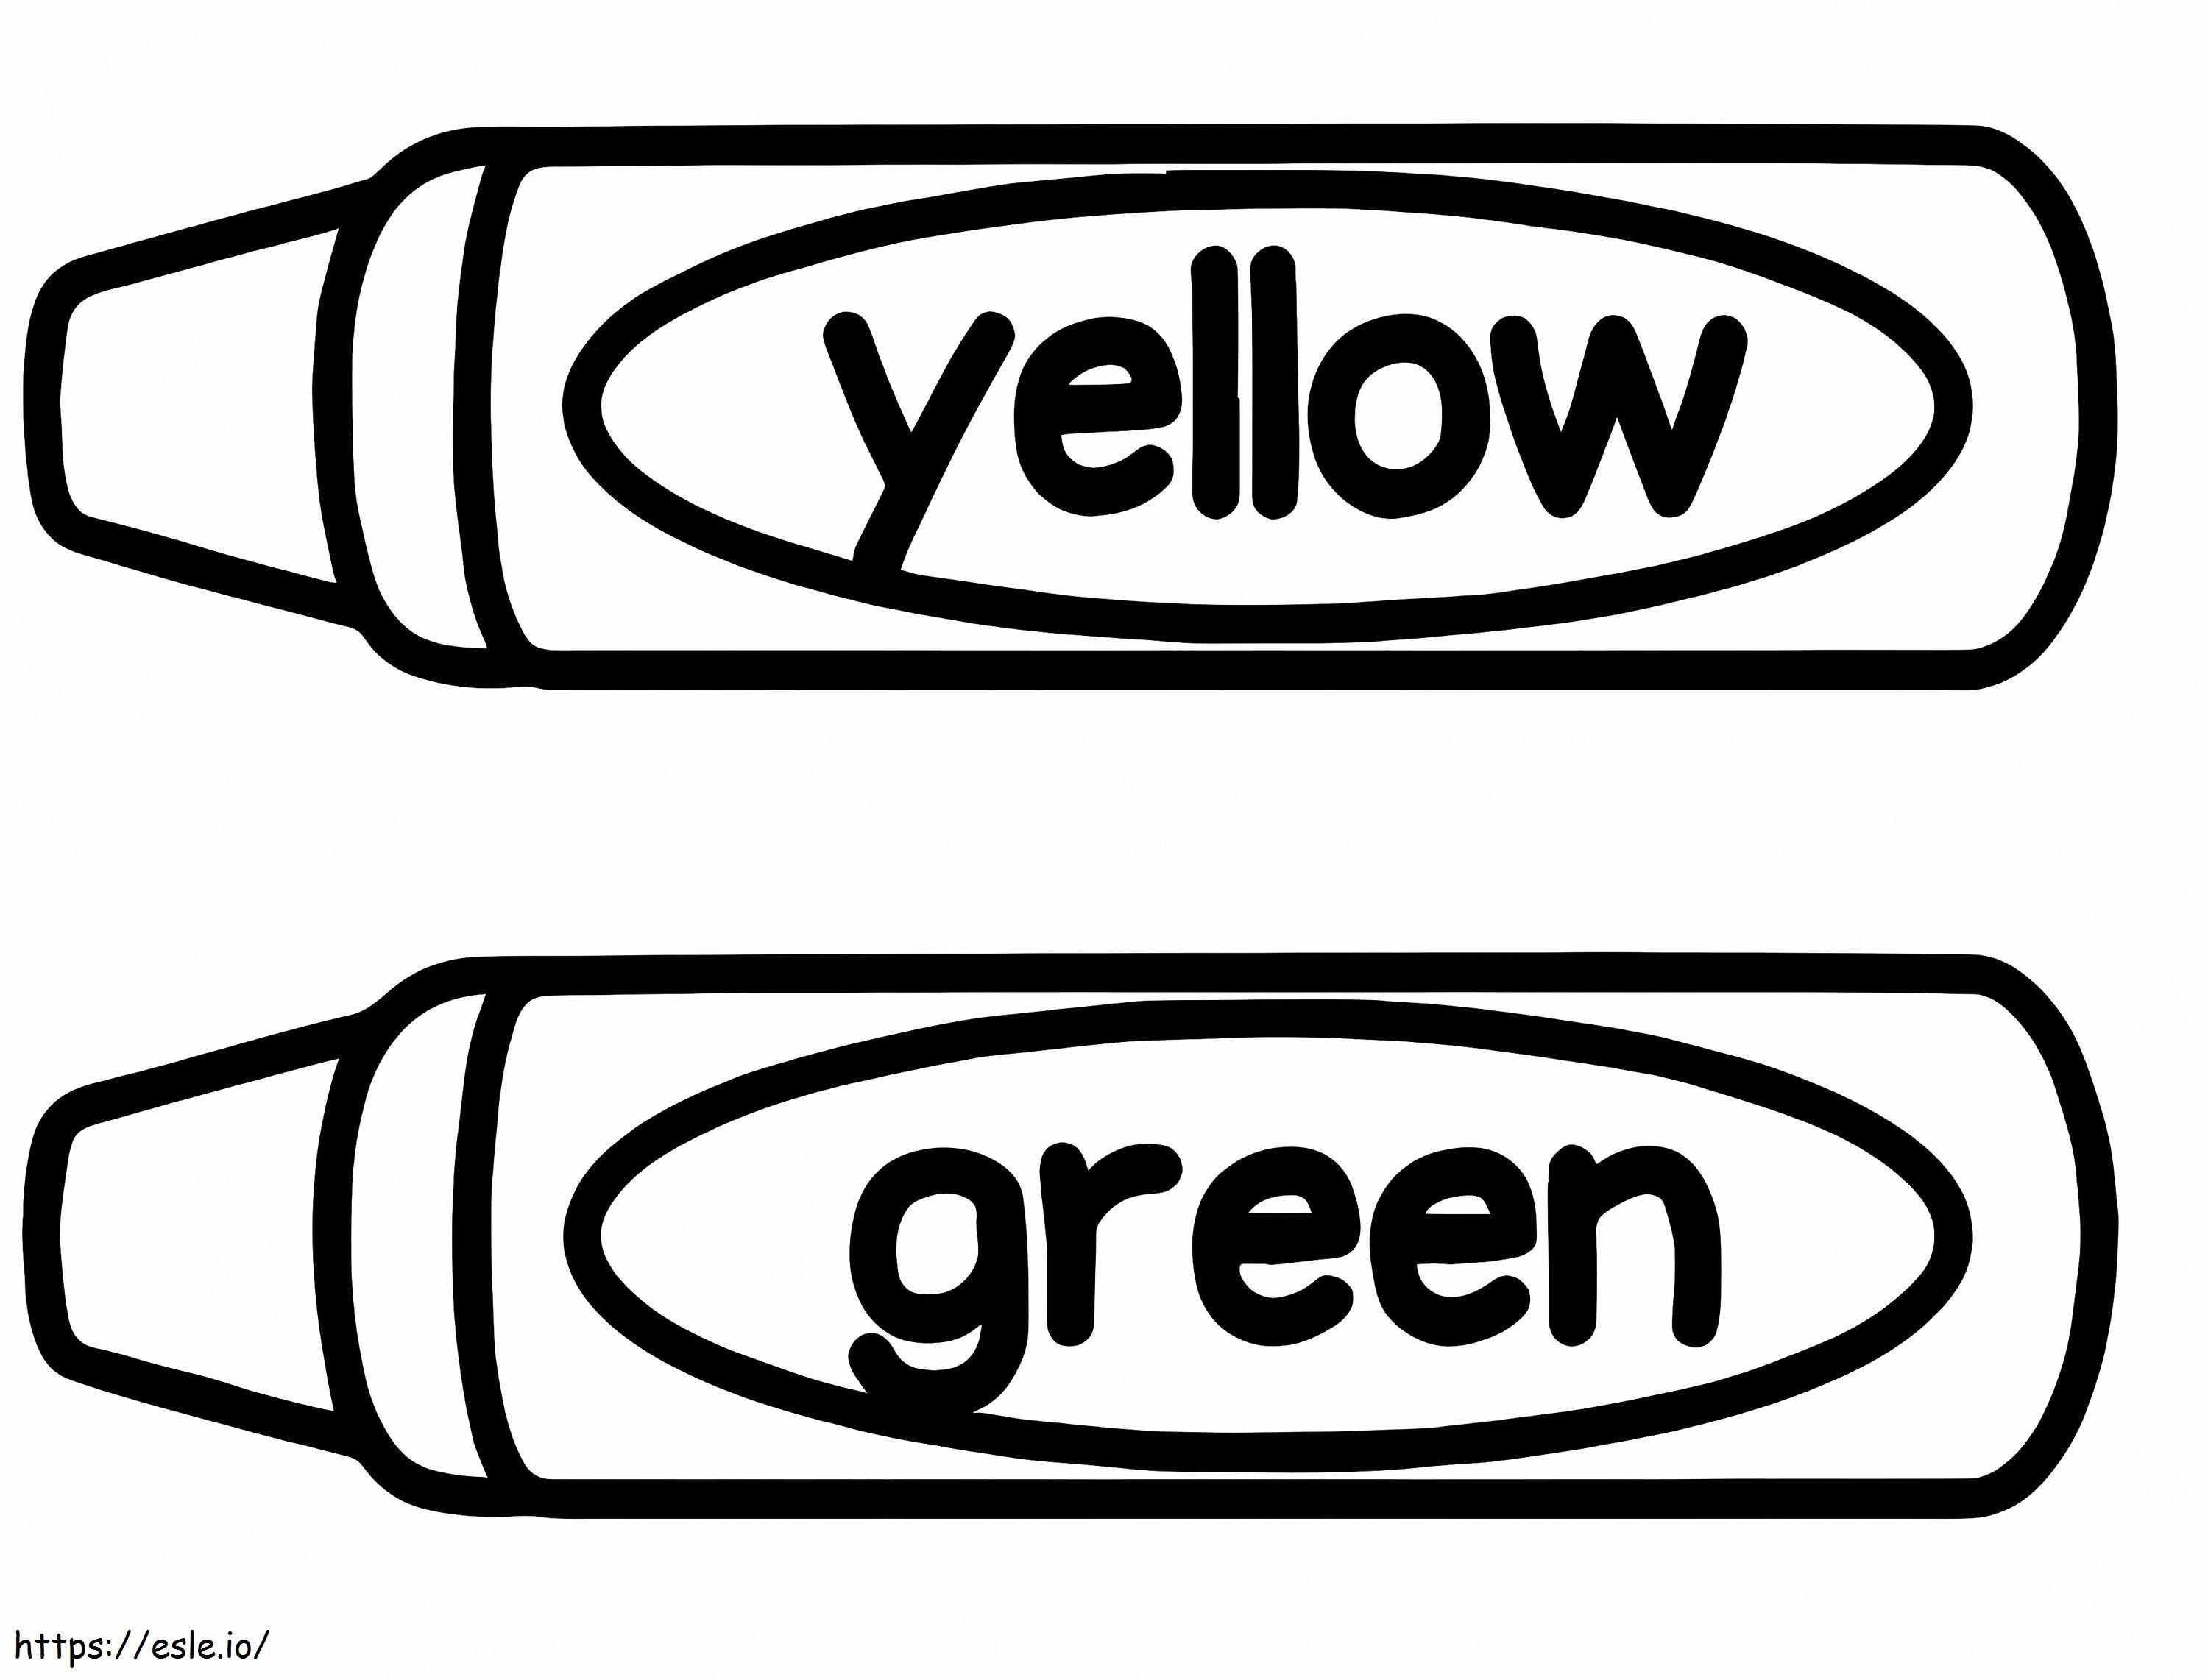 Crayones amarillos y verdes para colorear